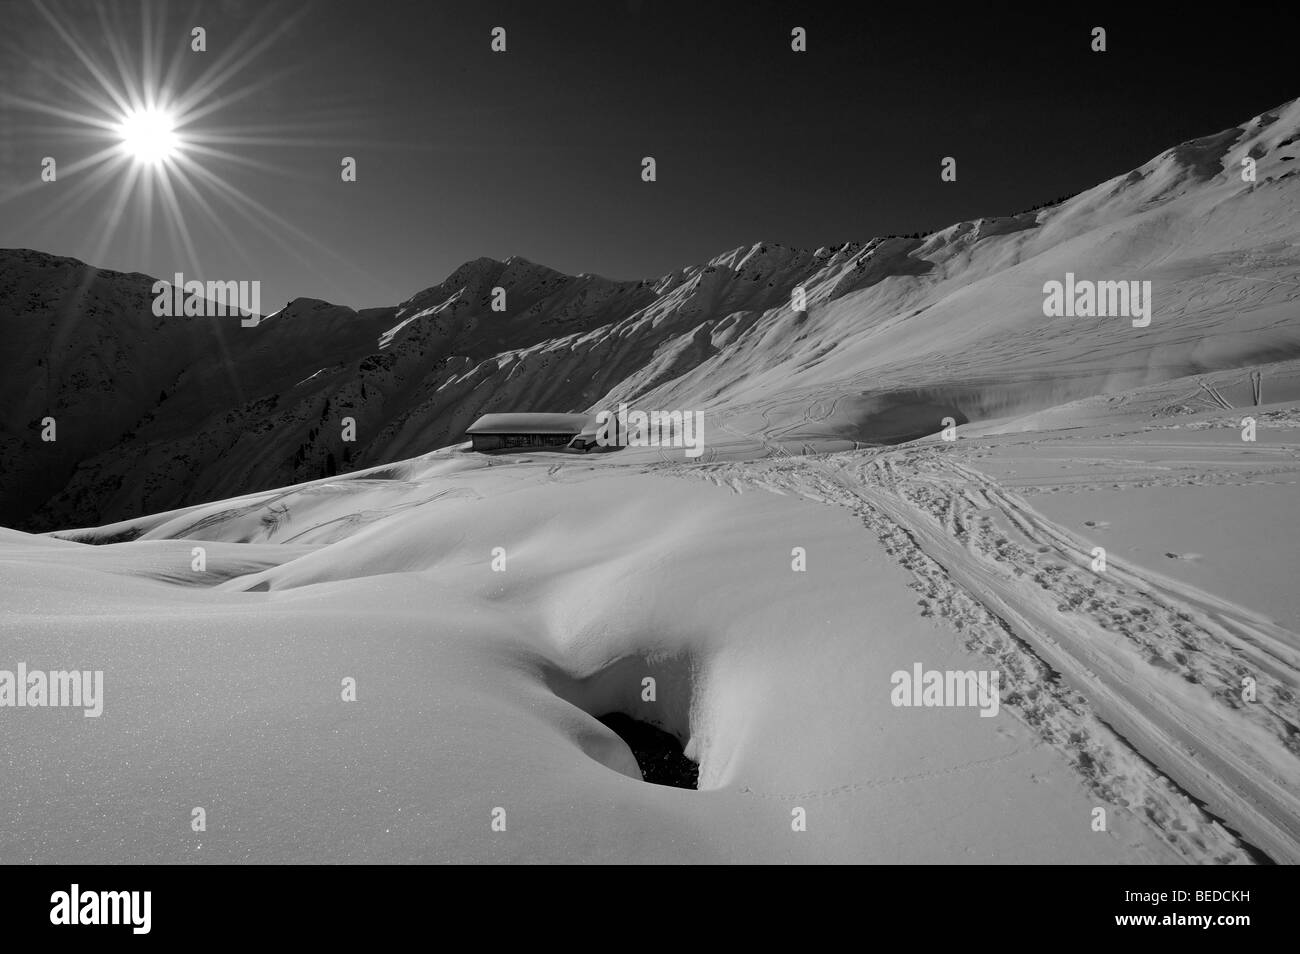 Piste de ski alpin et cabane dans les montagnes enneigées, Tm, Gruenhorn Vallée de Kleinwalsertal, l'Autriche, Europe Banque D'Images